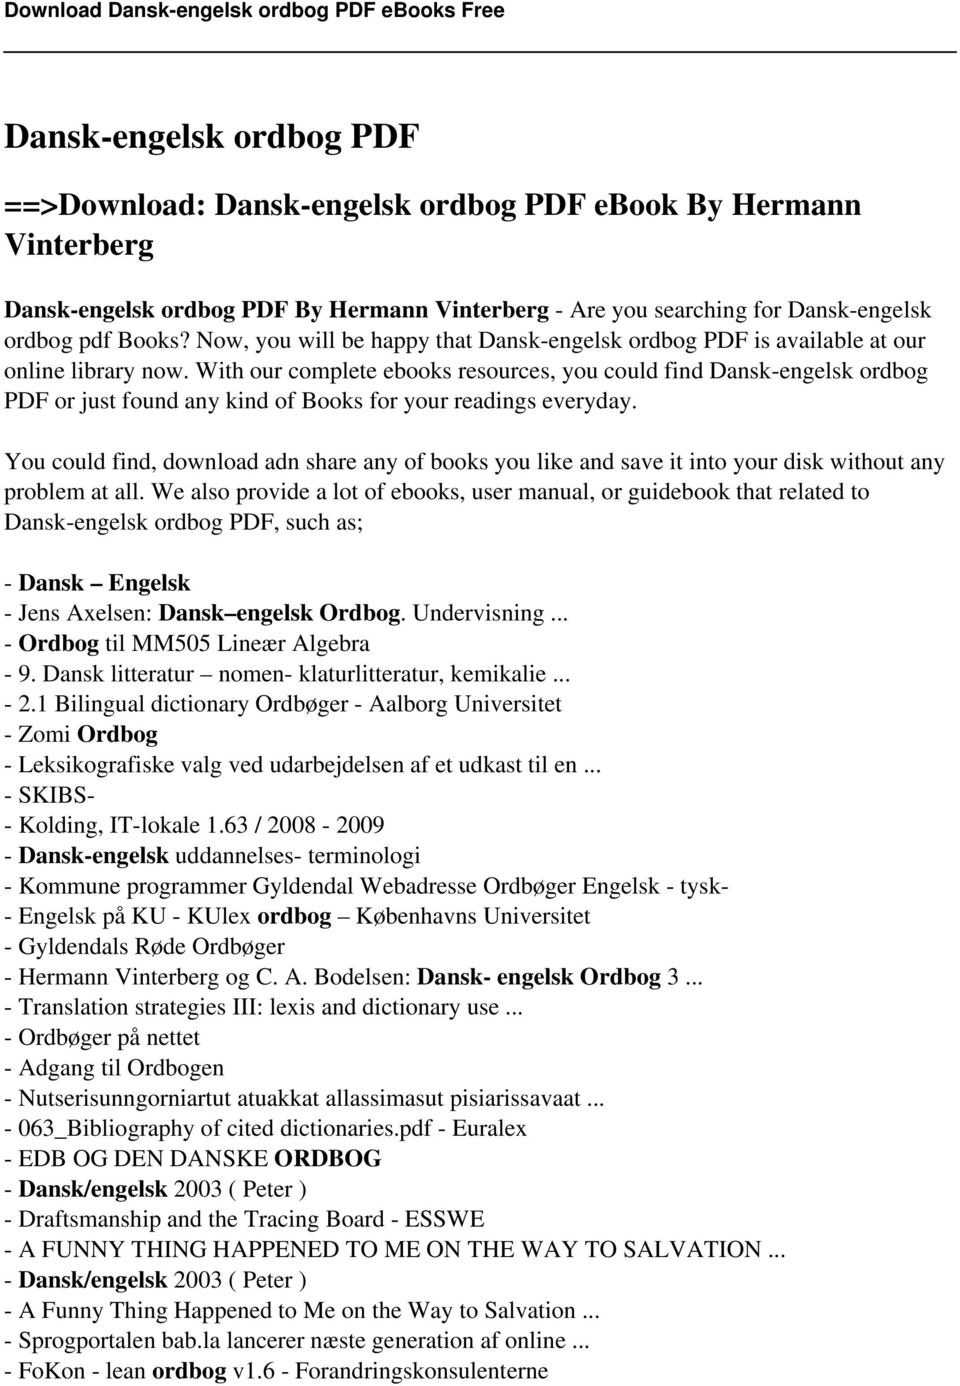 Dansk-engelsk ordbog PDF - PDF Free Download